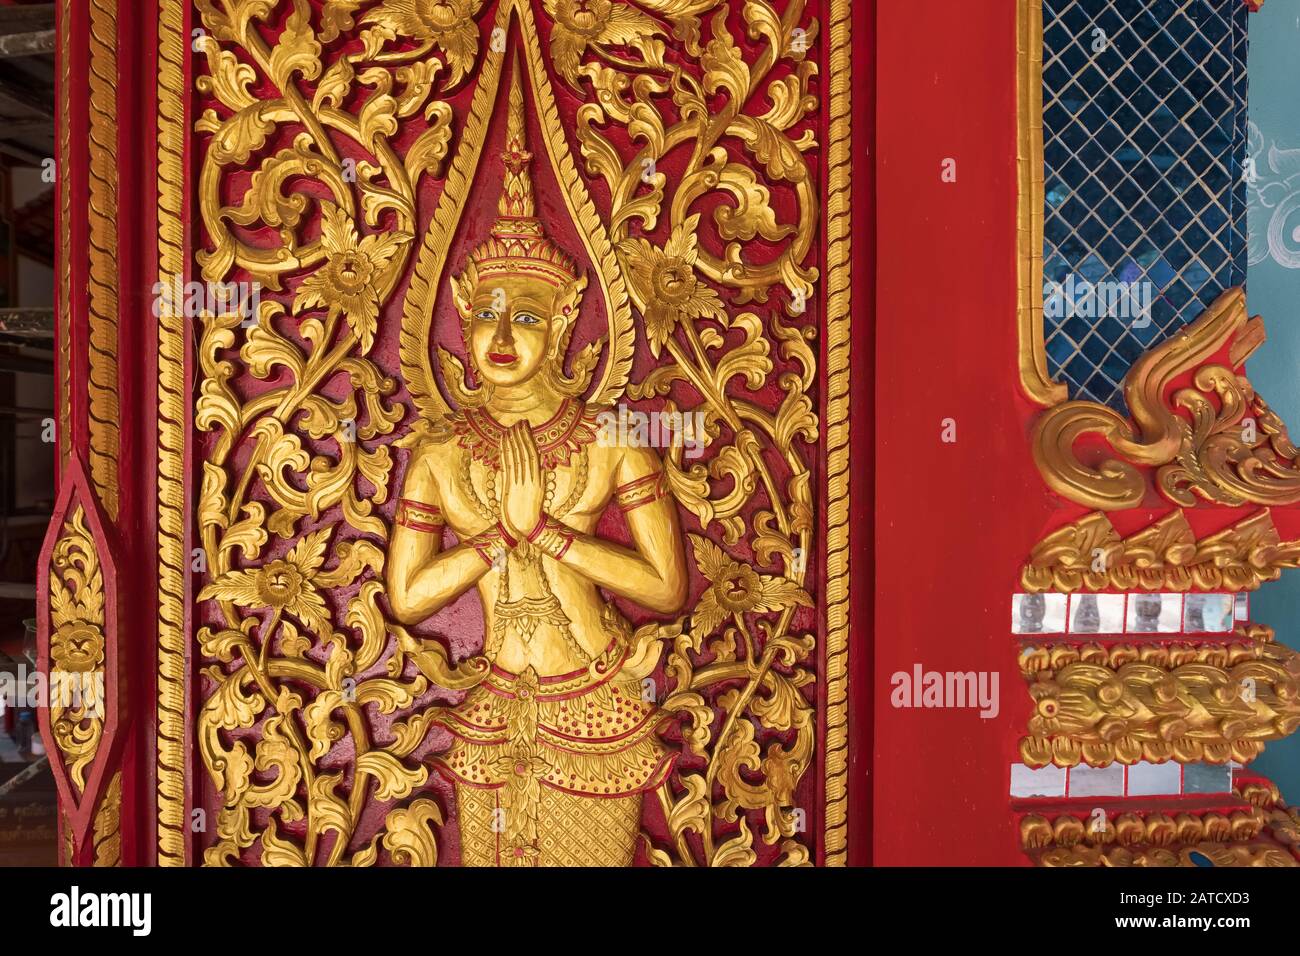 La decoración de talla de oro en el templo budista de Tailandia Foto de stock